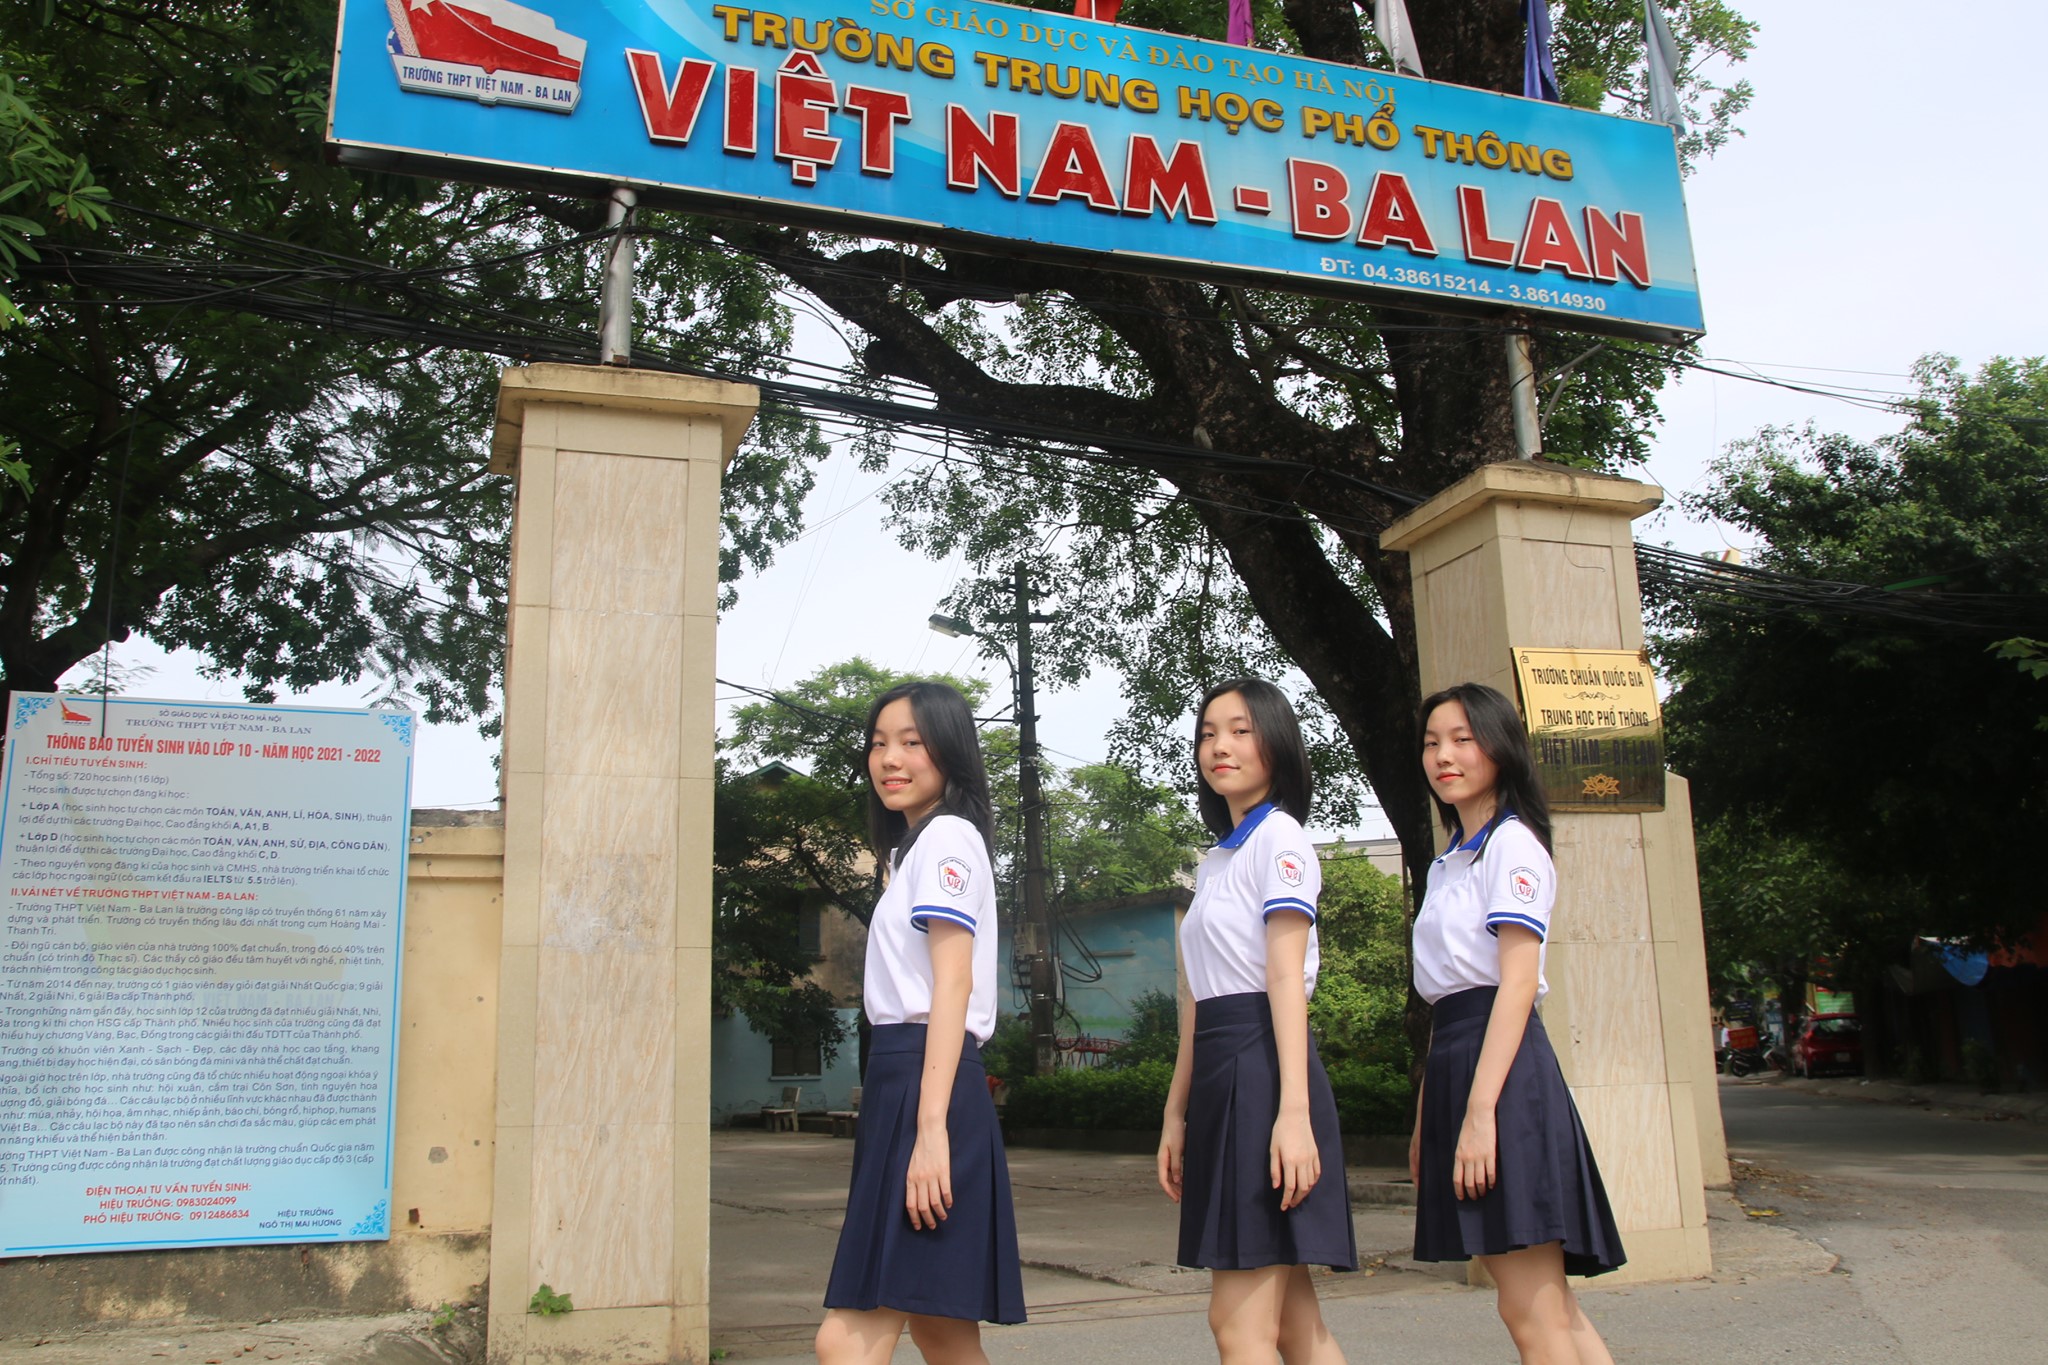 Trường PTTH Việt Nam - Ba Lan ảnh 2